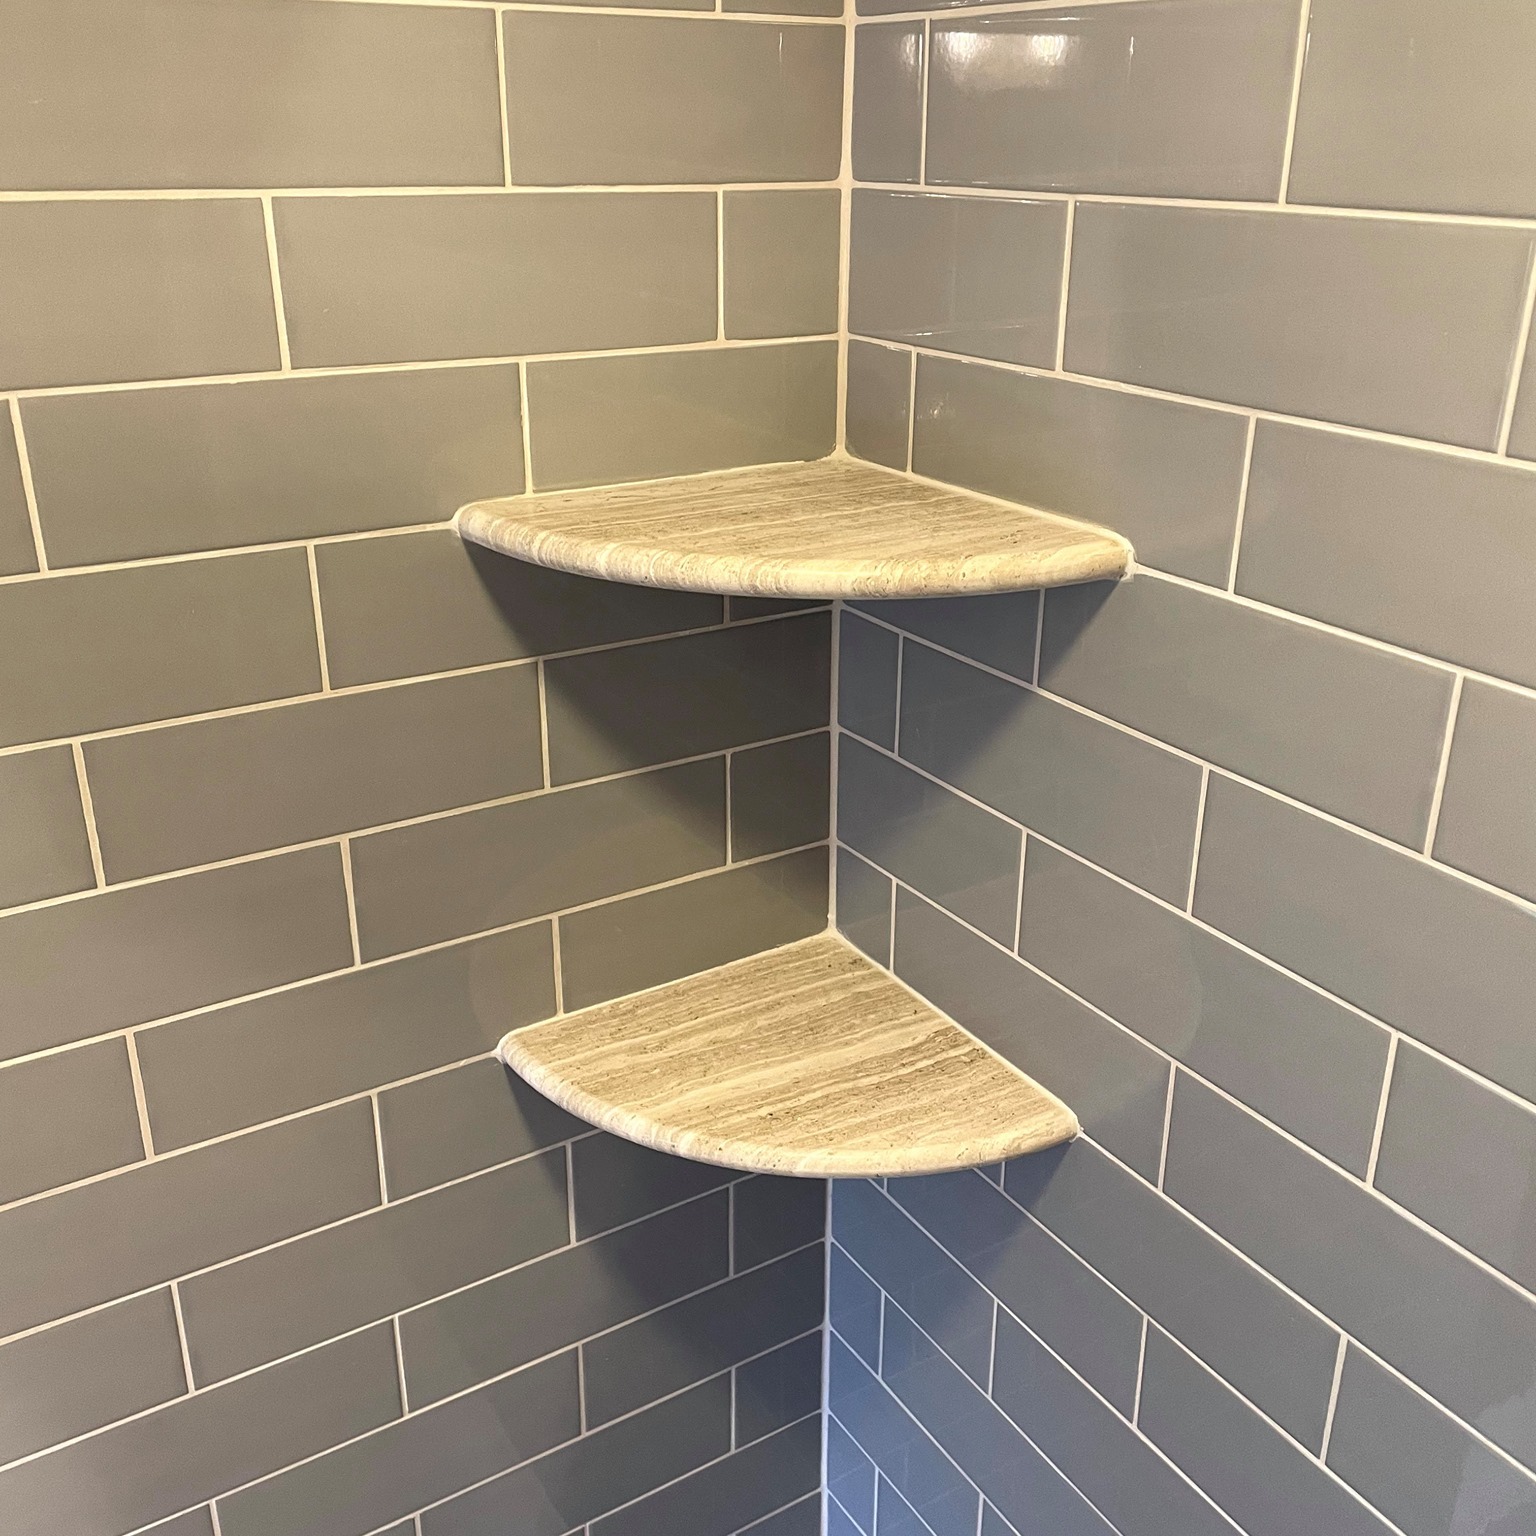 Ceramic Corner Shower Caddy Shelf: The GoShelf System